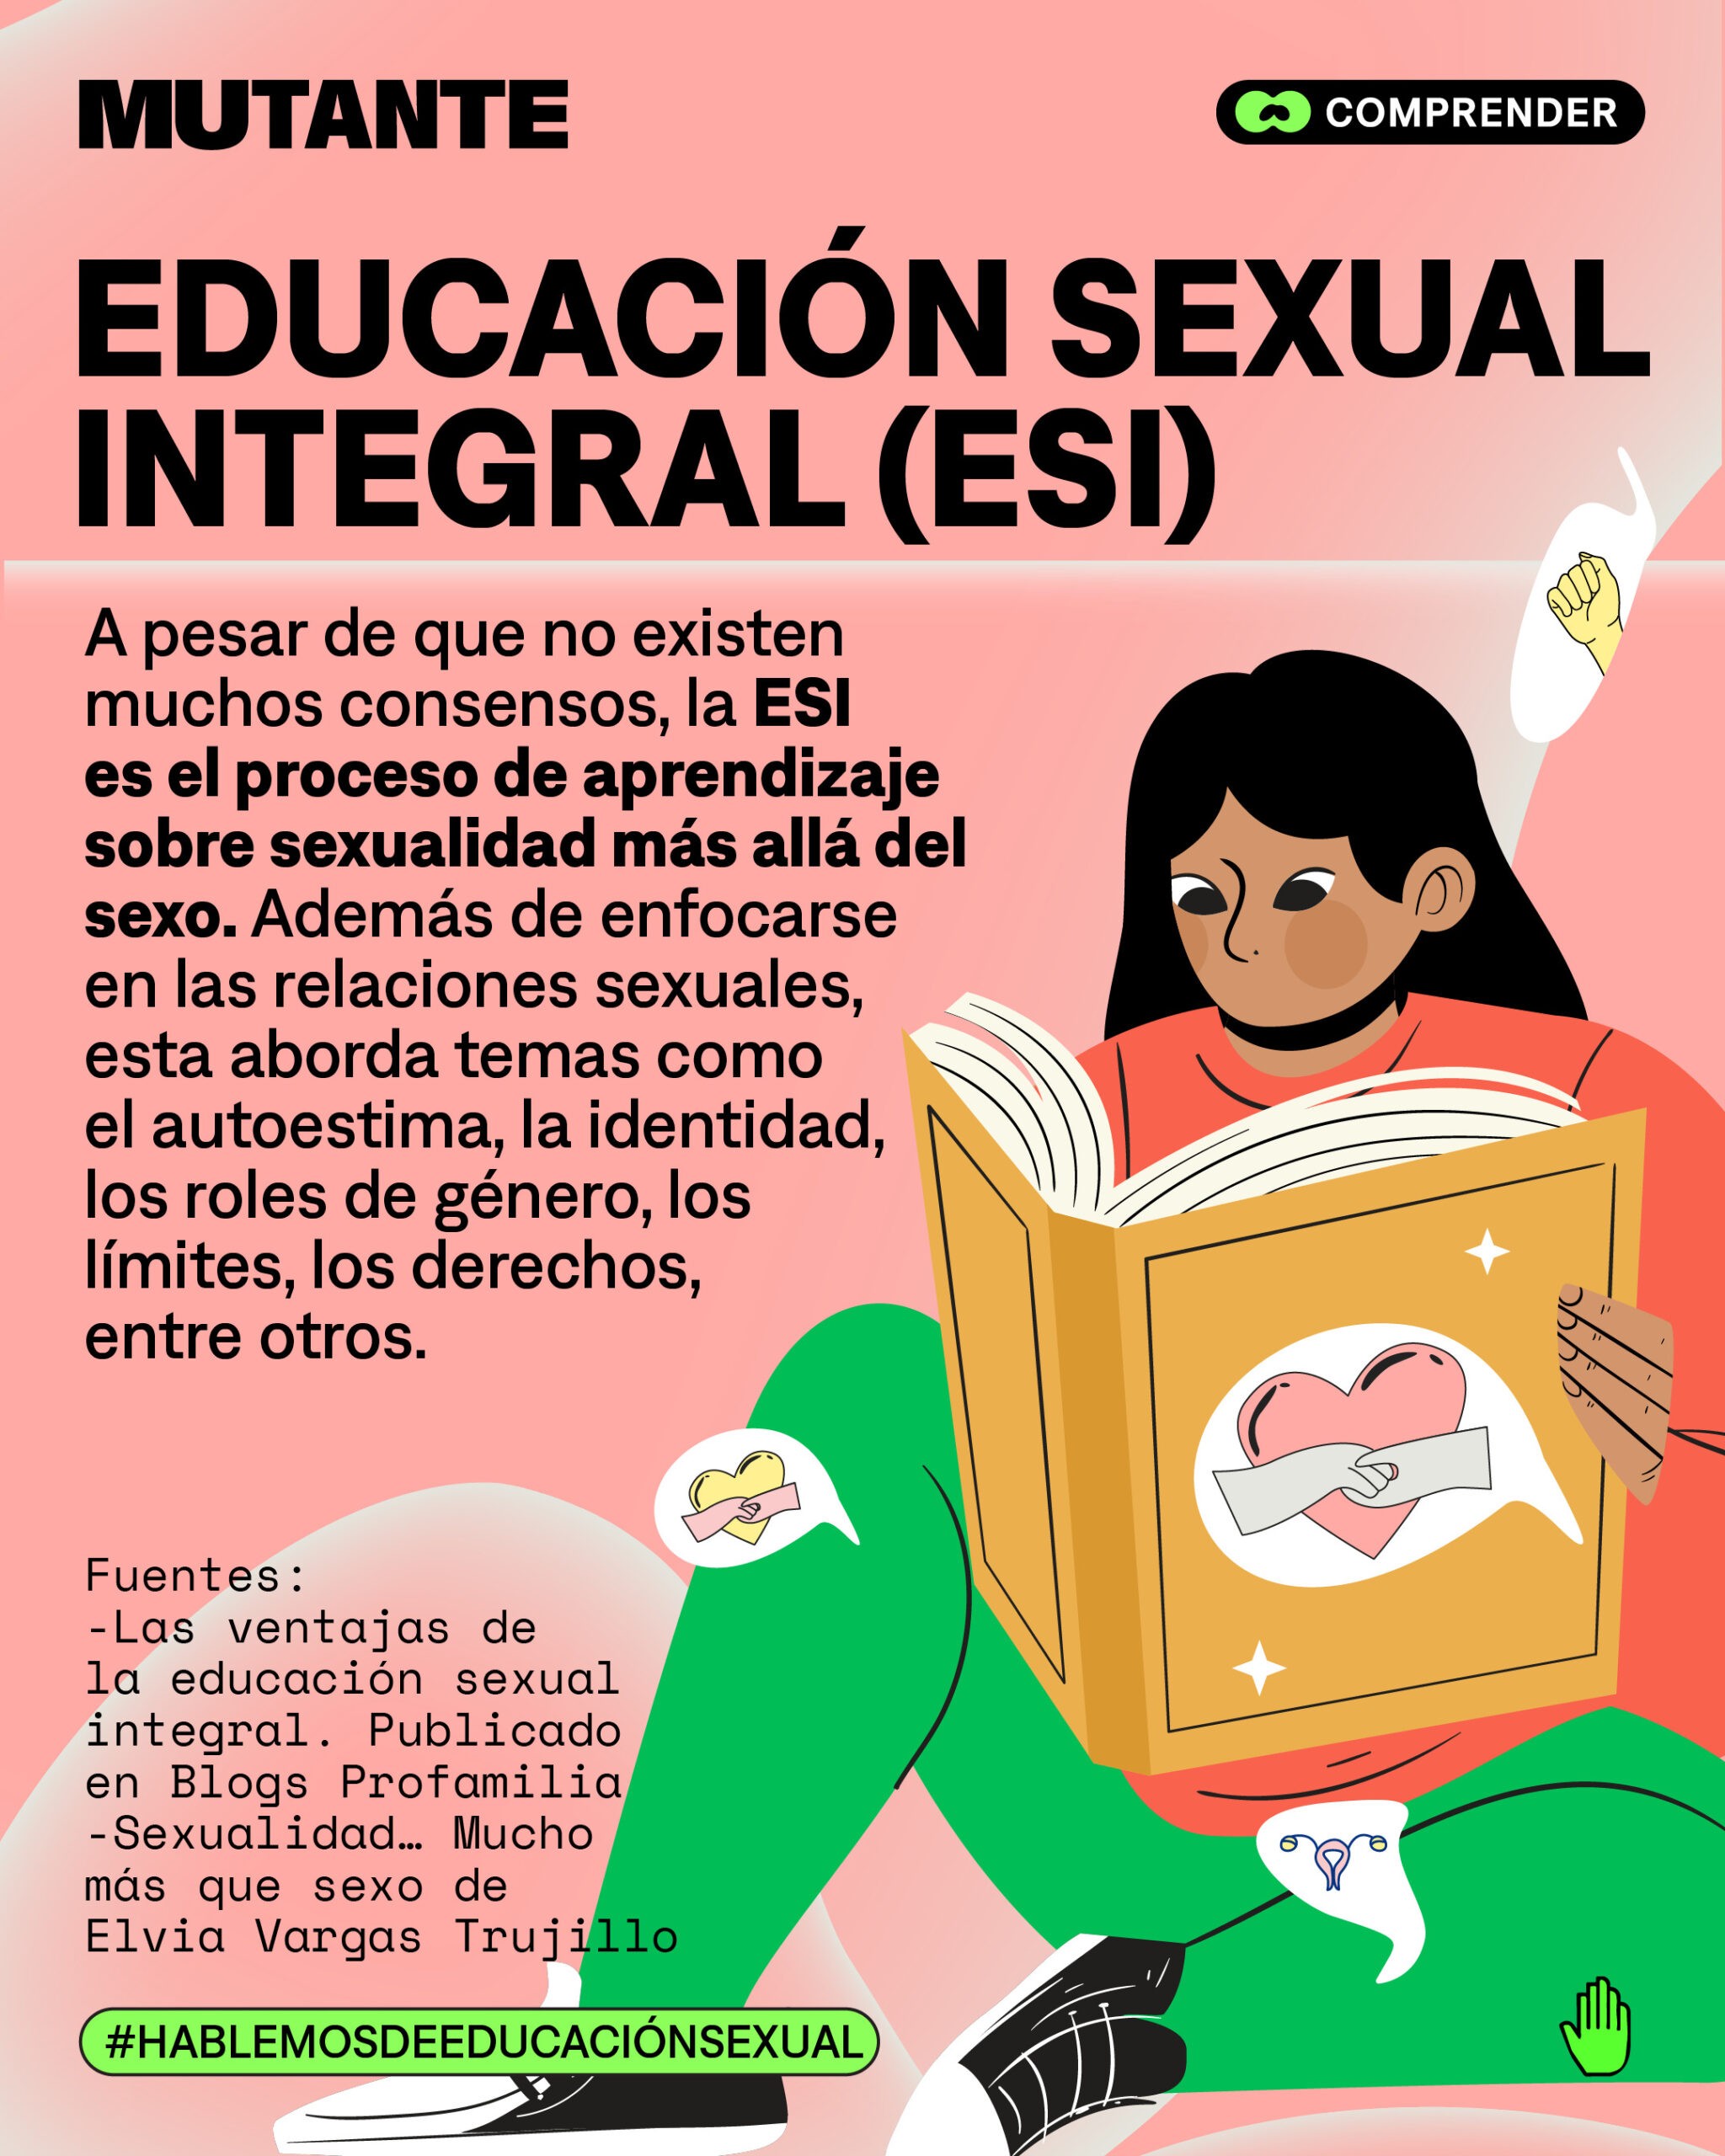 Mutante Educación Sexual Integral